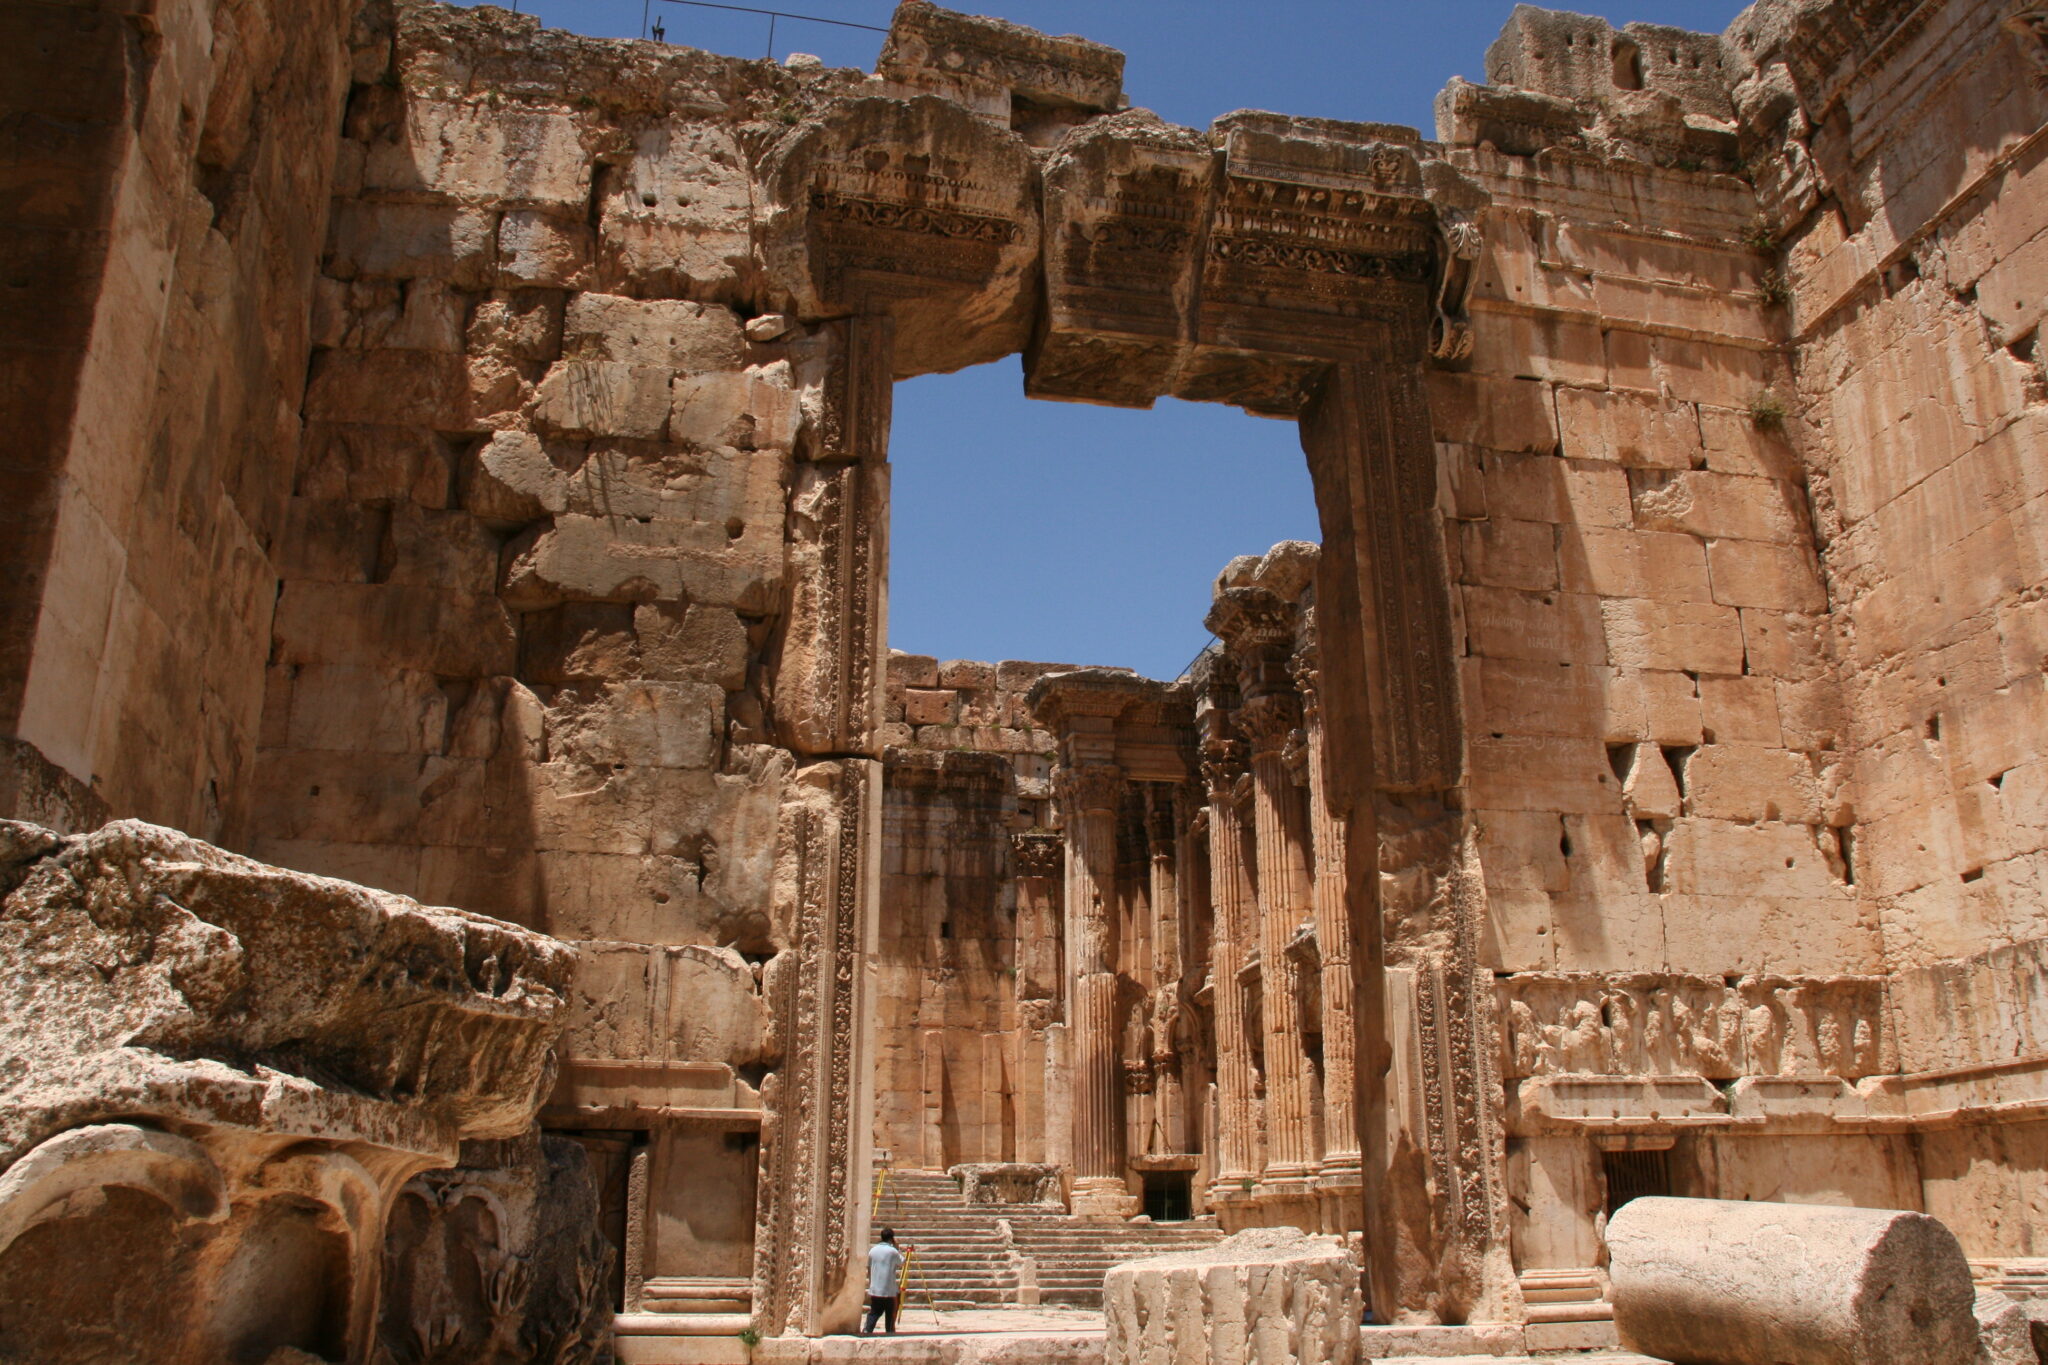 Rondreis Libanon, Baalbek tempel met Treasury Travel